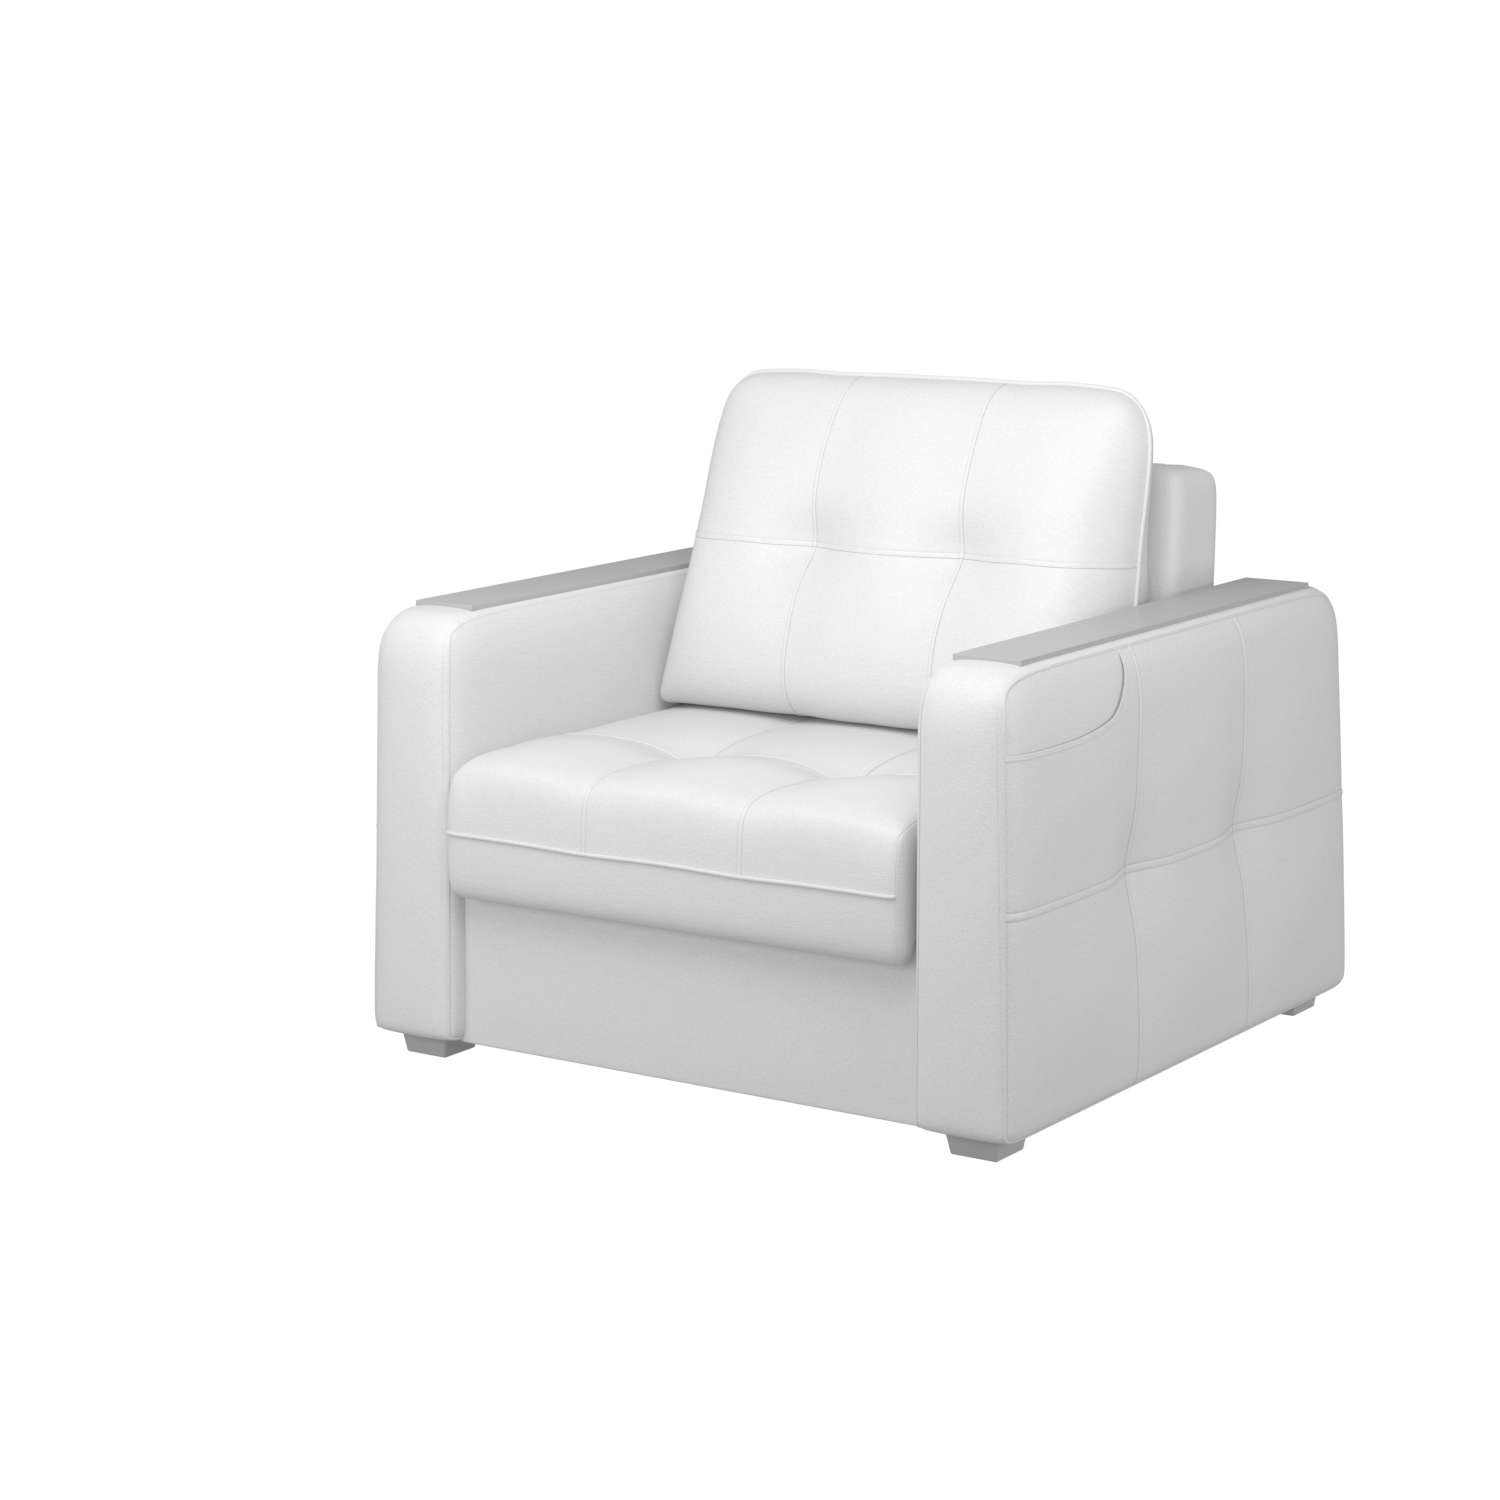 Мягкое кресло с ящиком Киль-3, кКЛ01.вл23.23у